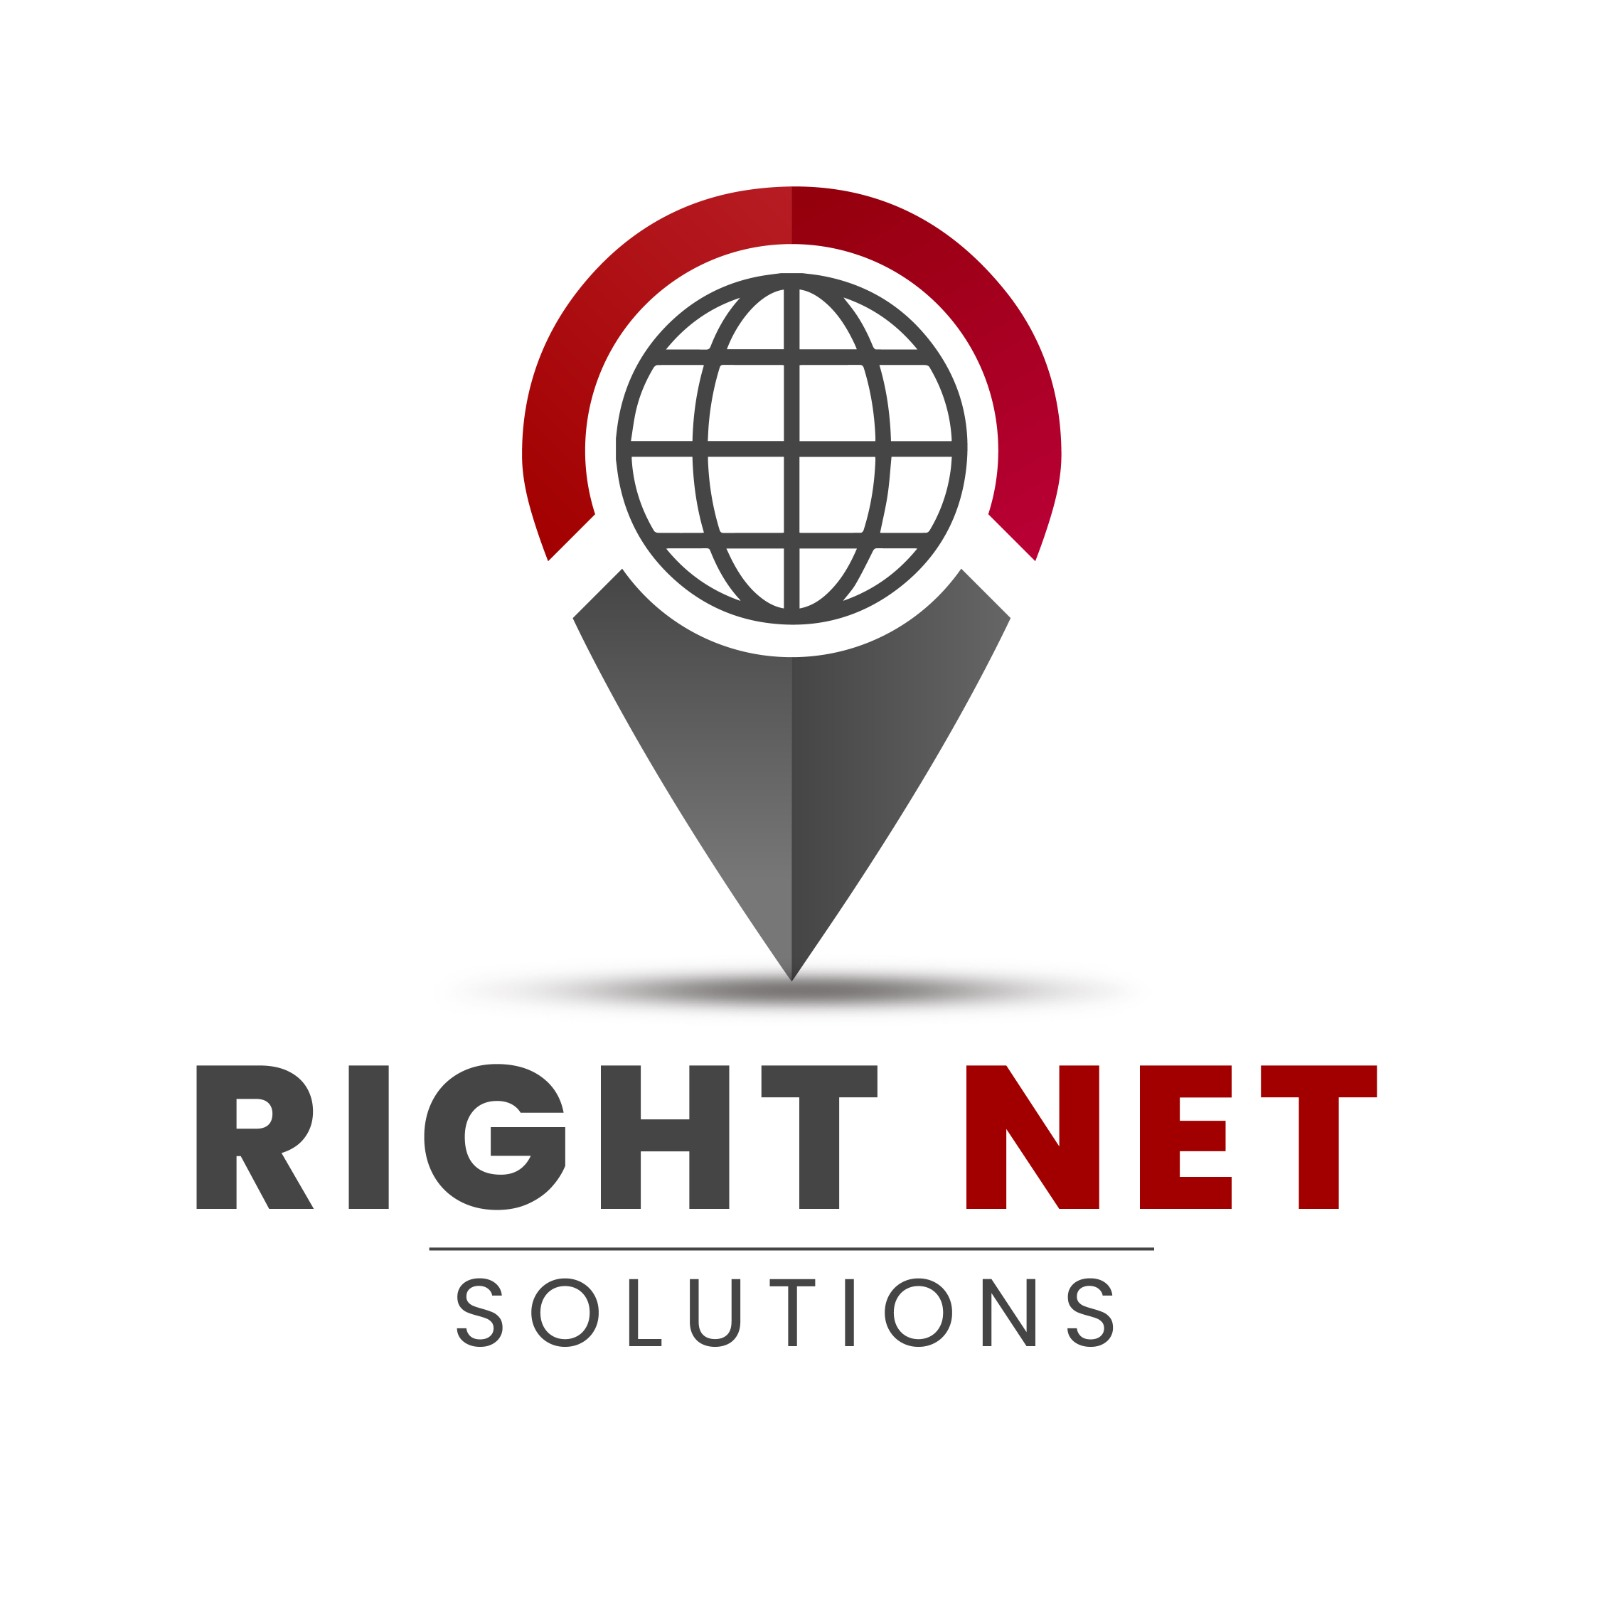 Right Net Solutions logo